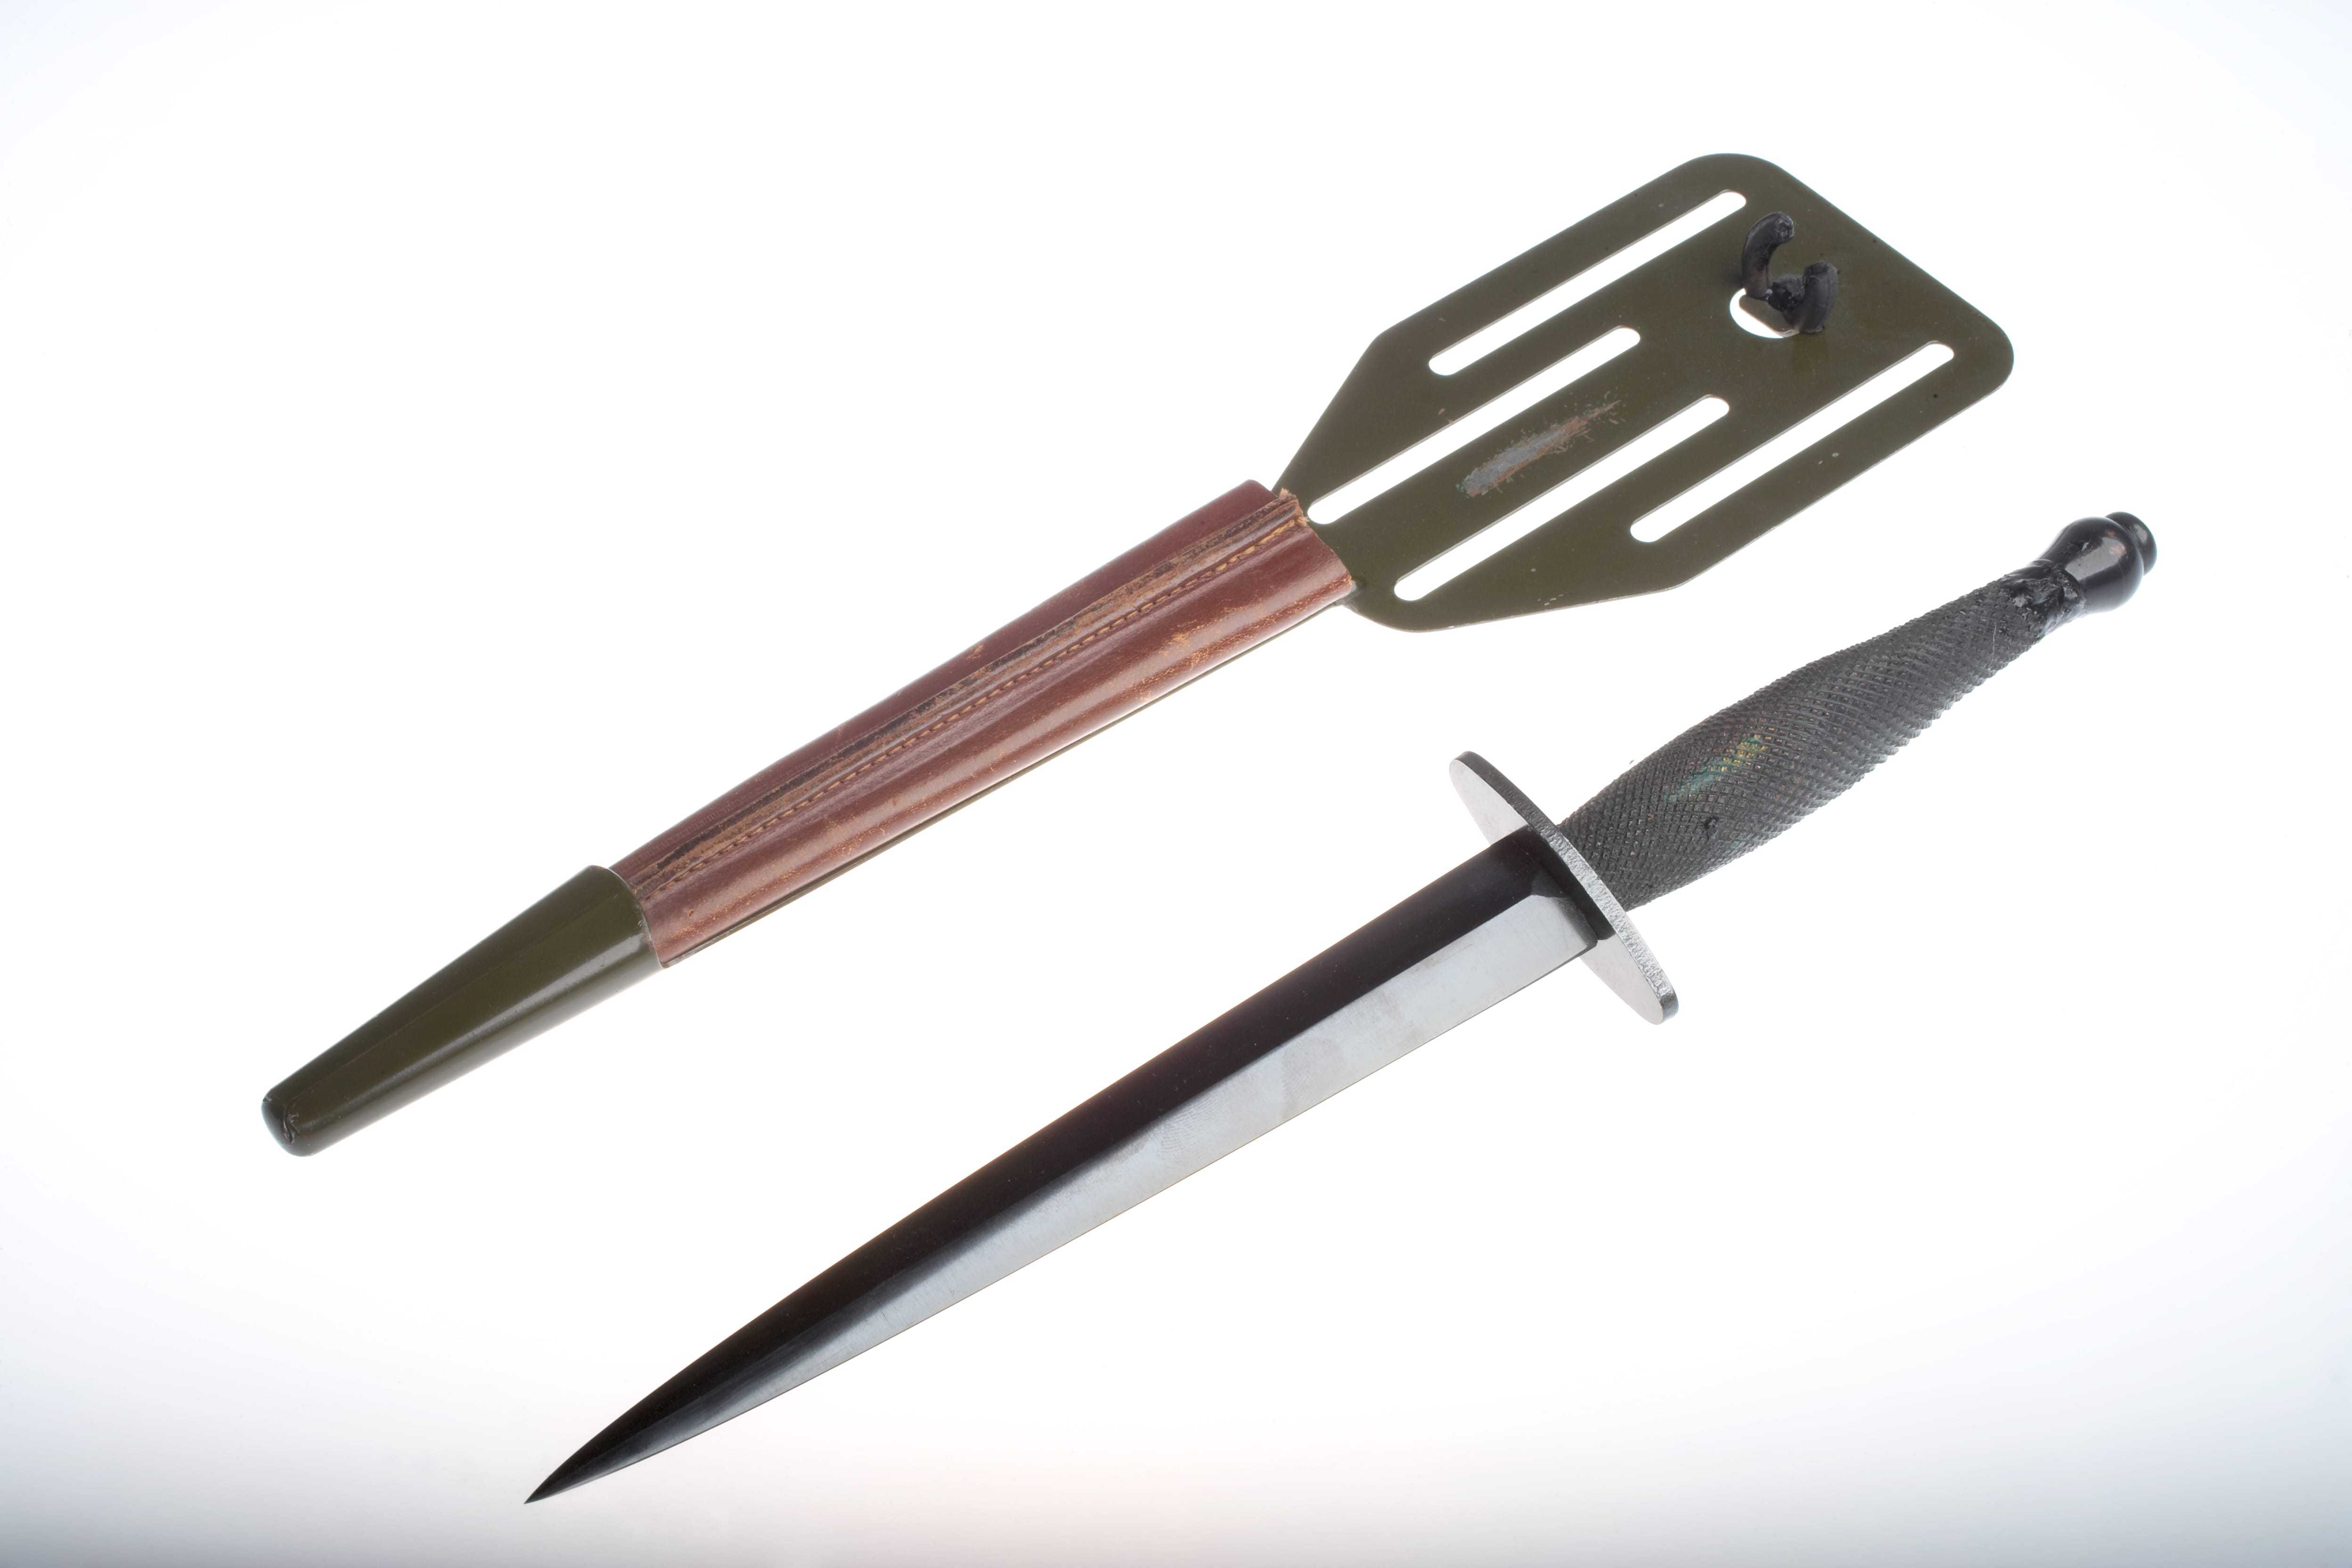 A short silver knife, alongside a wooden sheath